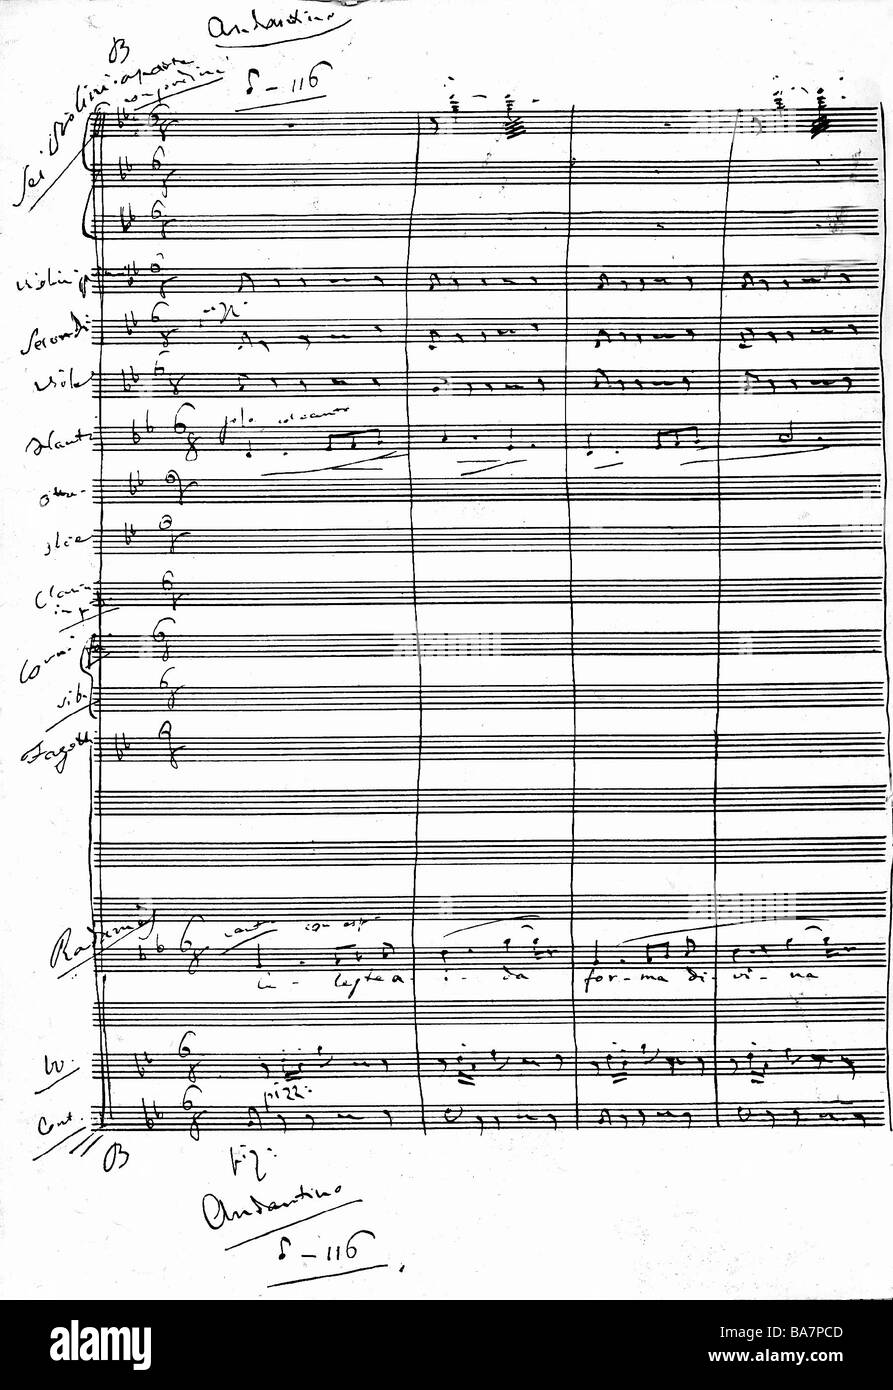 Verdi, Giuseppe, 10.10.13 - 27.1.1901, italienischer Komponist, Werke, Oper "Aida", Seite aus Partitur, Autograph, ca. 1870, Stockfoto